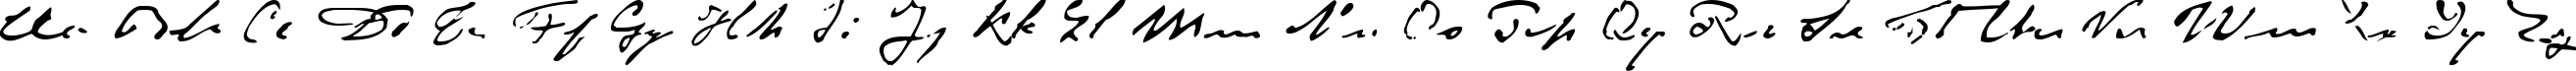 Пример написания английского алфавита шрифтом P22Monet-Impressionist